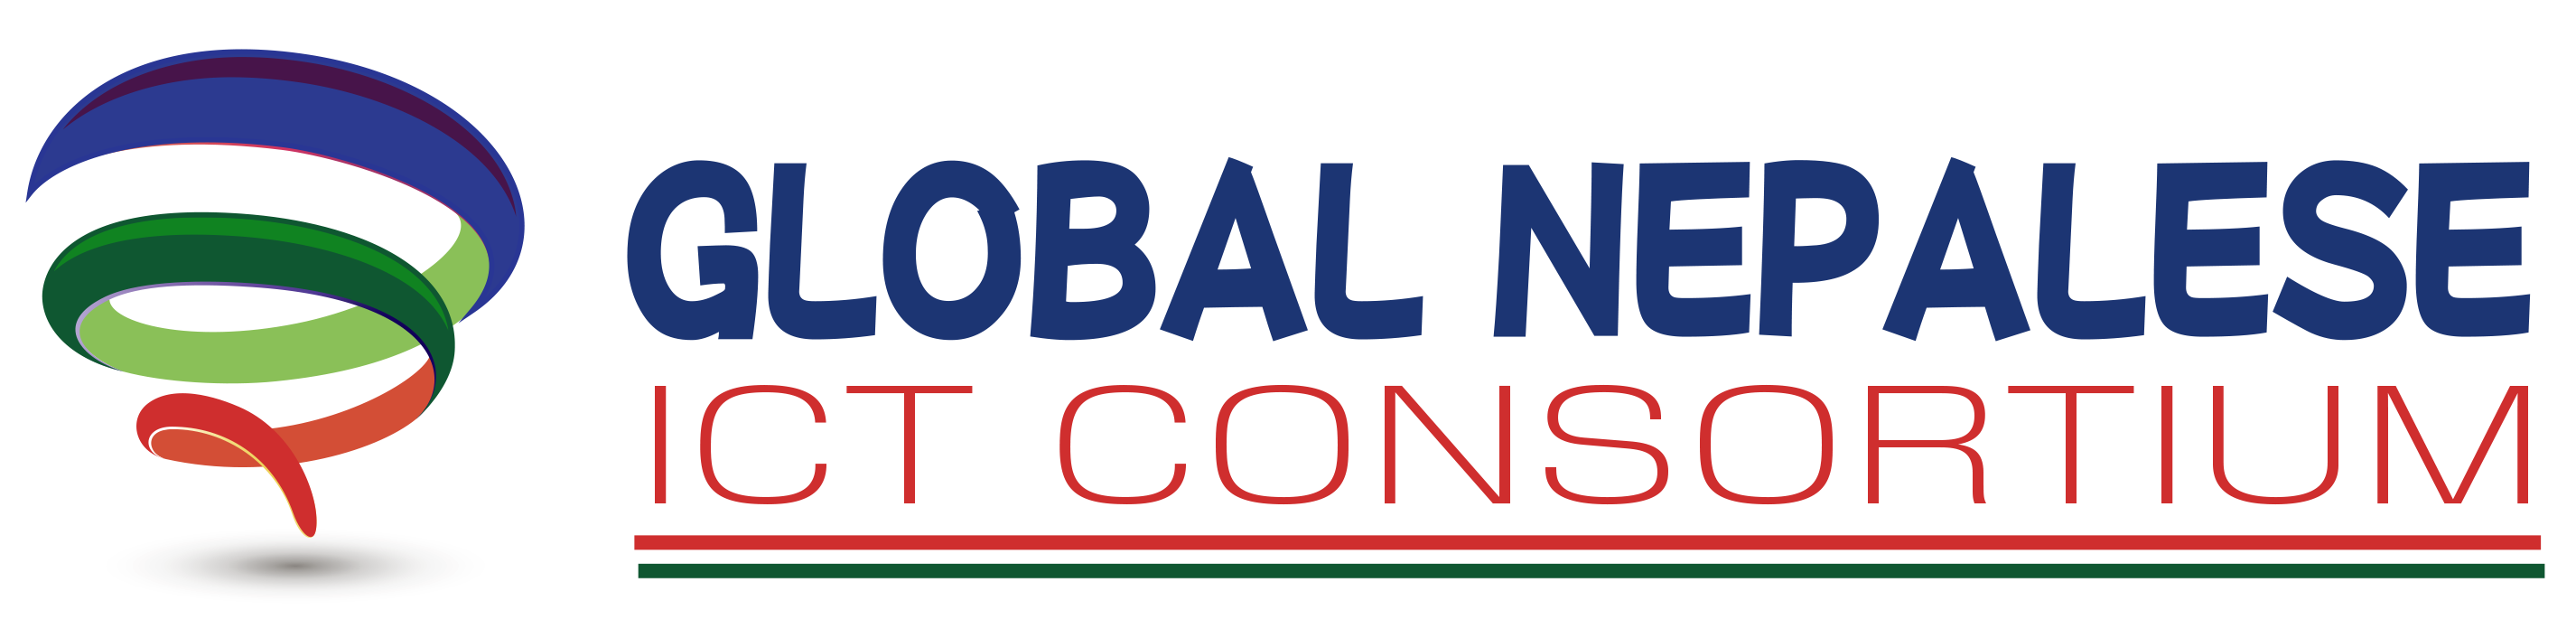 Global Nepalese ICT Consortium